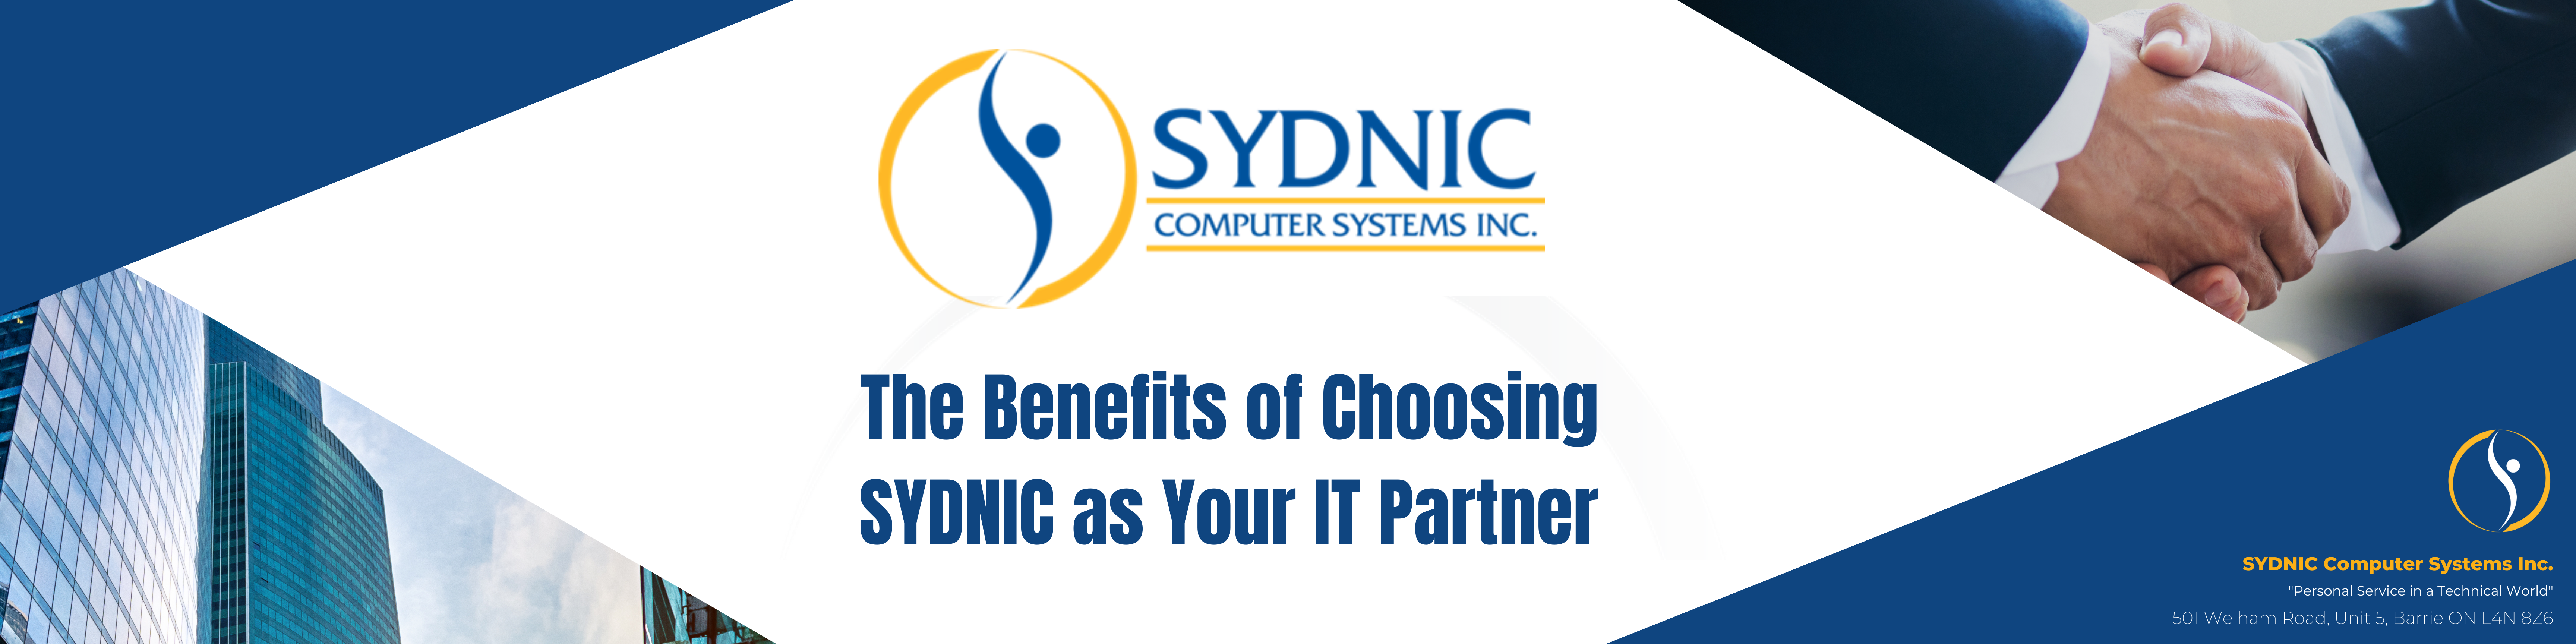 Choosing Sydnic